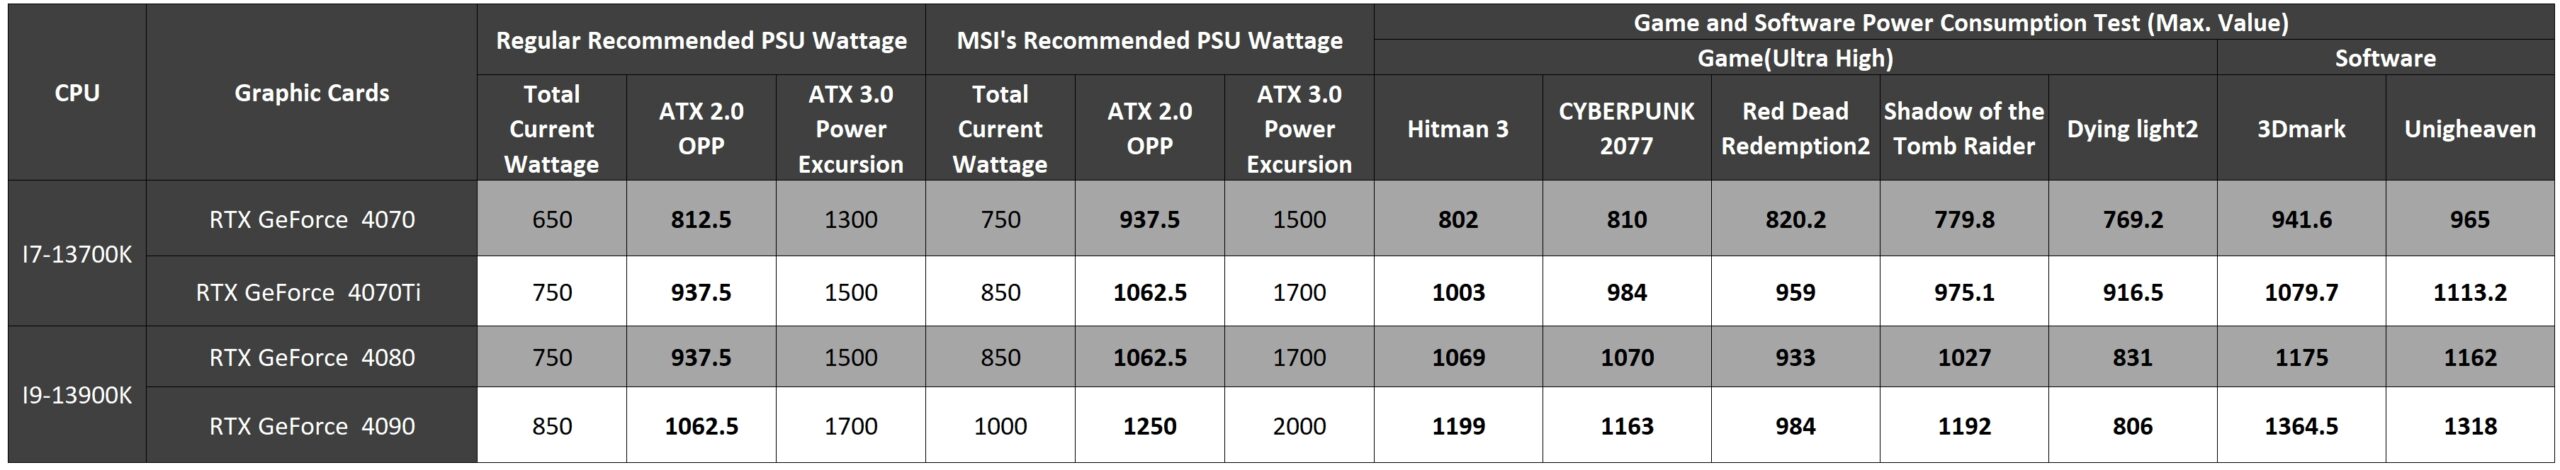 پاورهای ATX 3.0 بهترین انتخاب برای RTX 40 که بیش از تصور توان مصرفی دارند !